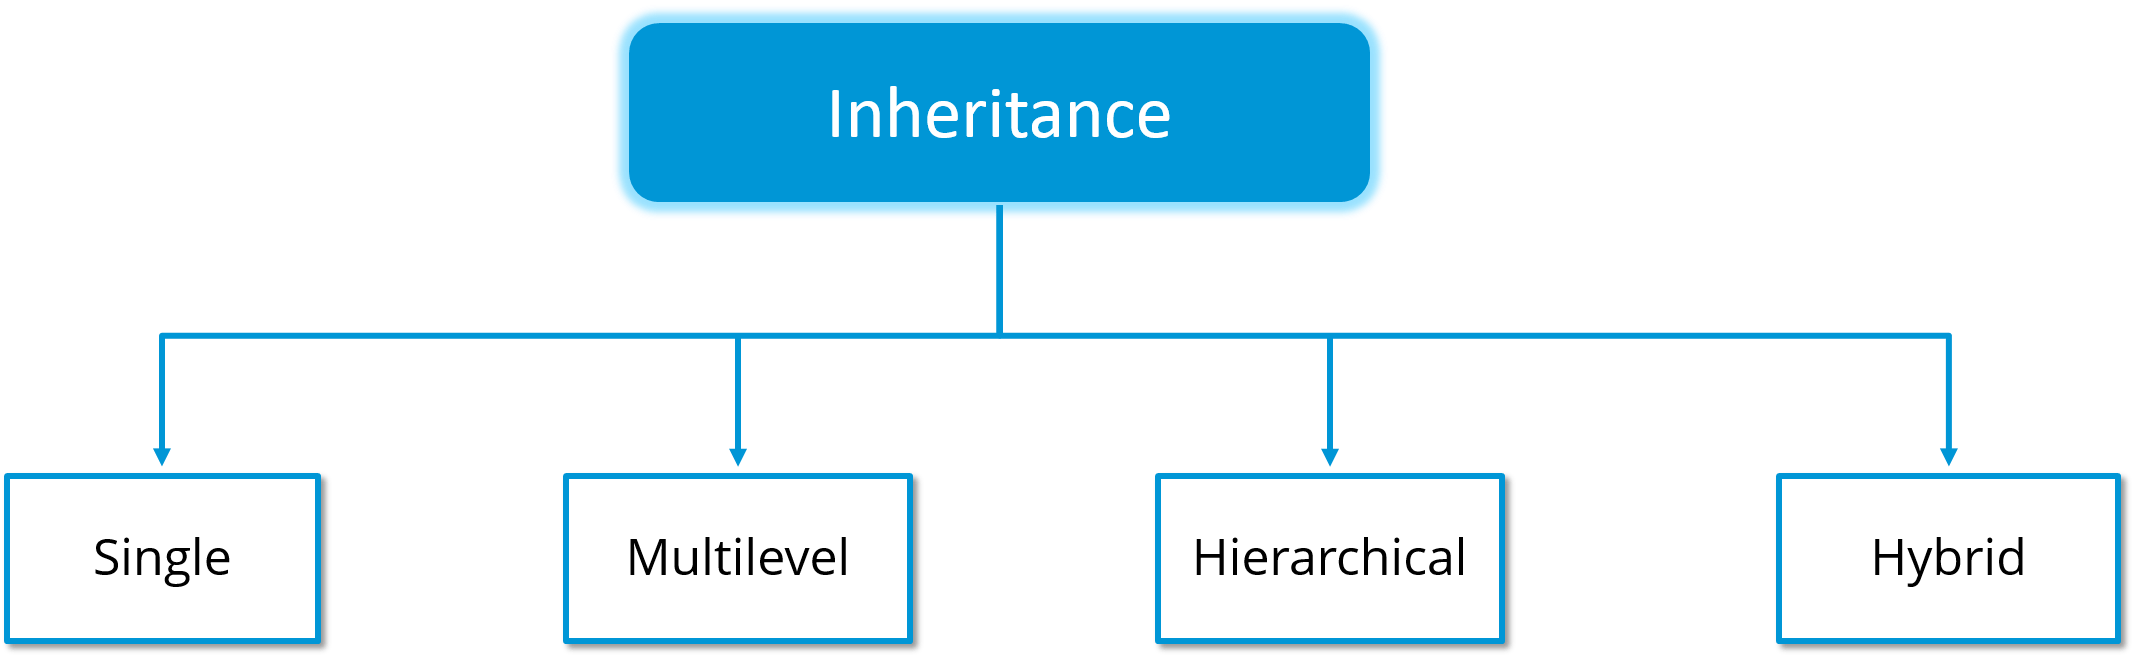 OOP Inheritance & Polymorphism - Java Programming Tutorial